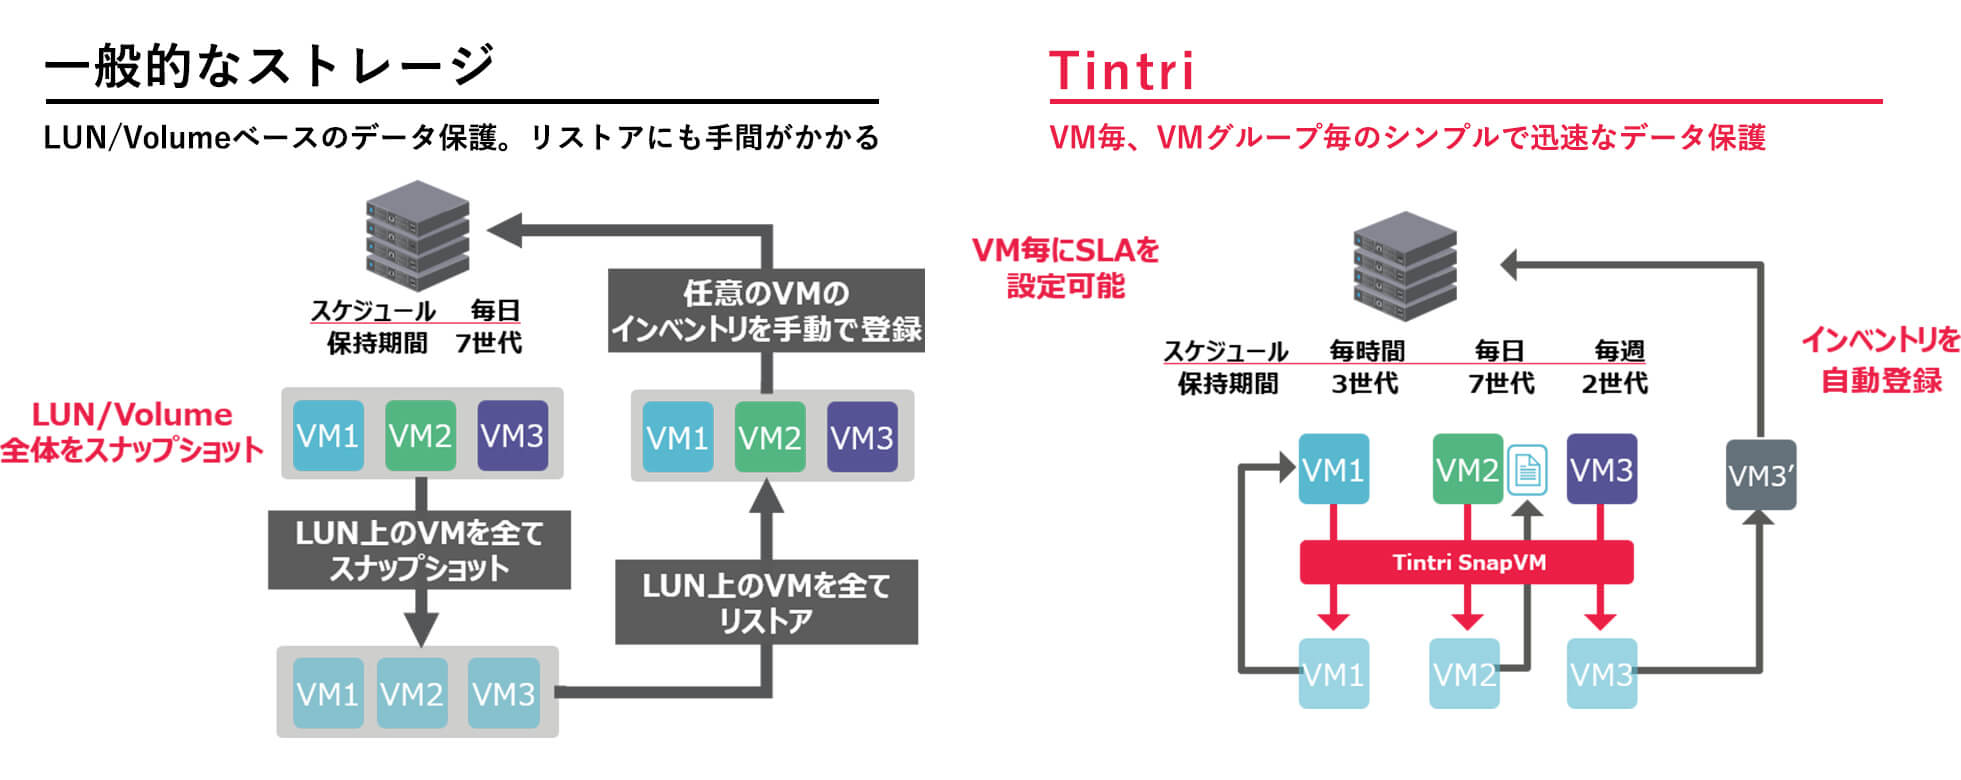 一般的なストレージ：LUN/Volumeベースのデータ保護。リストアにも手間がかかる、Tintri：VM毎、VMグループ毎のシンプルで迅速なデータ保護